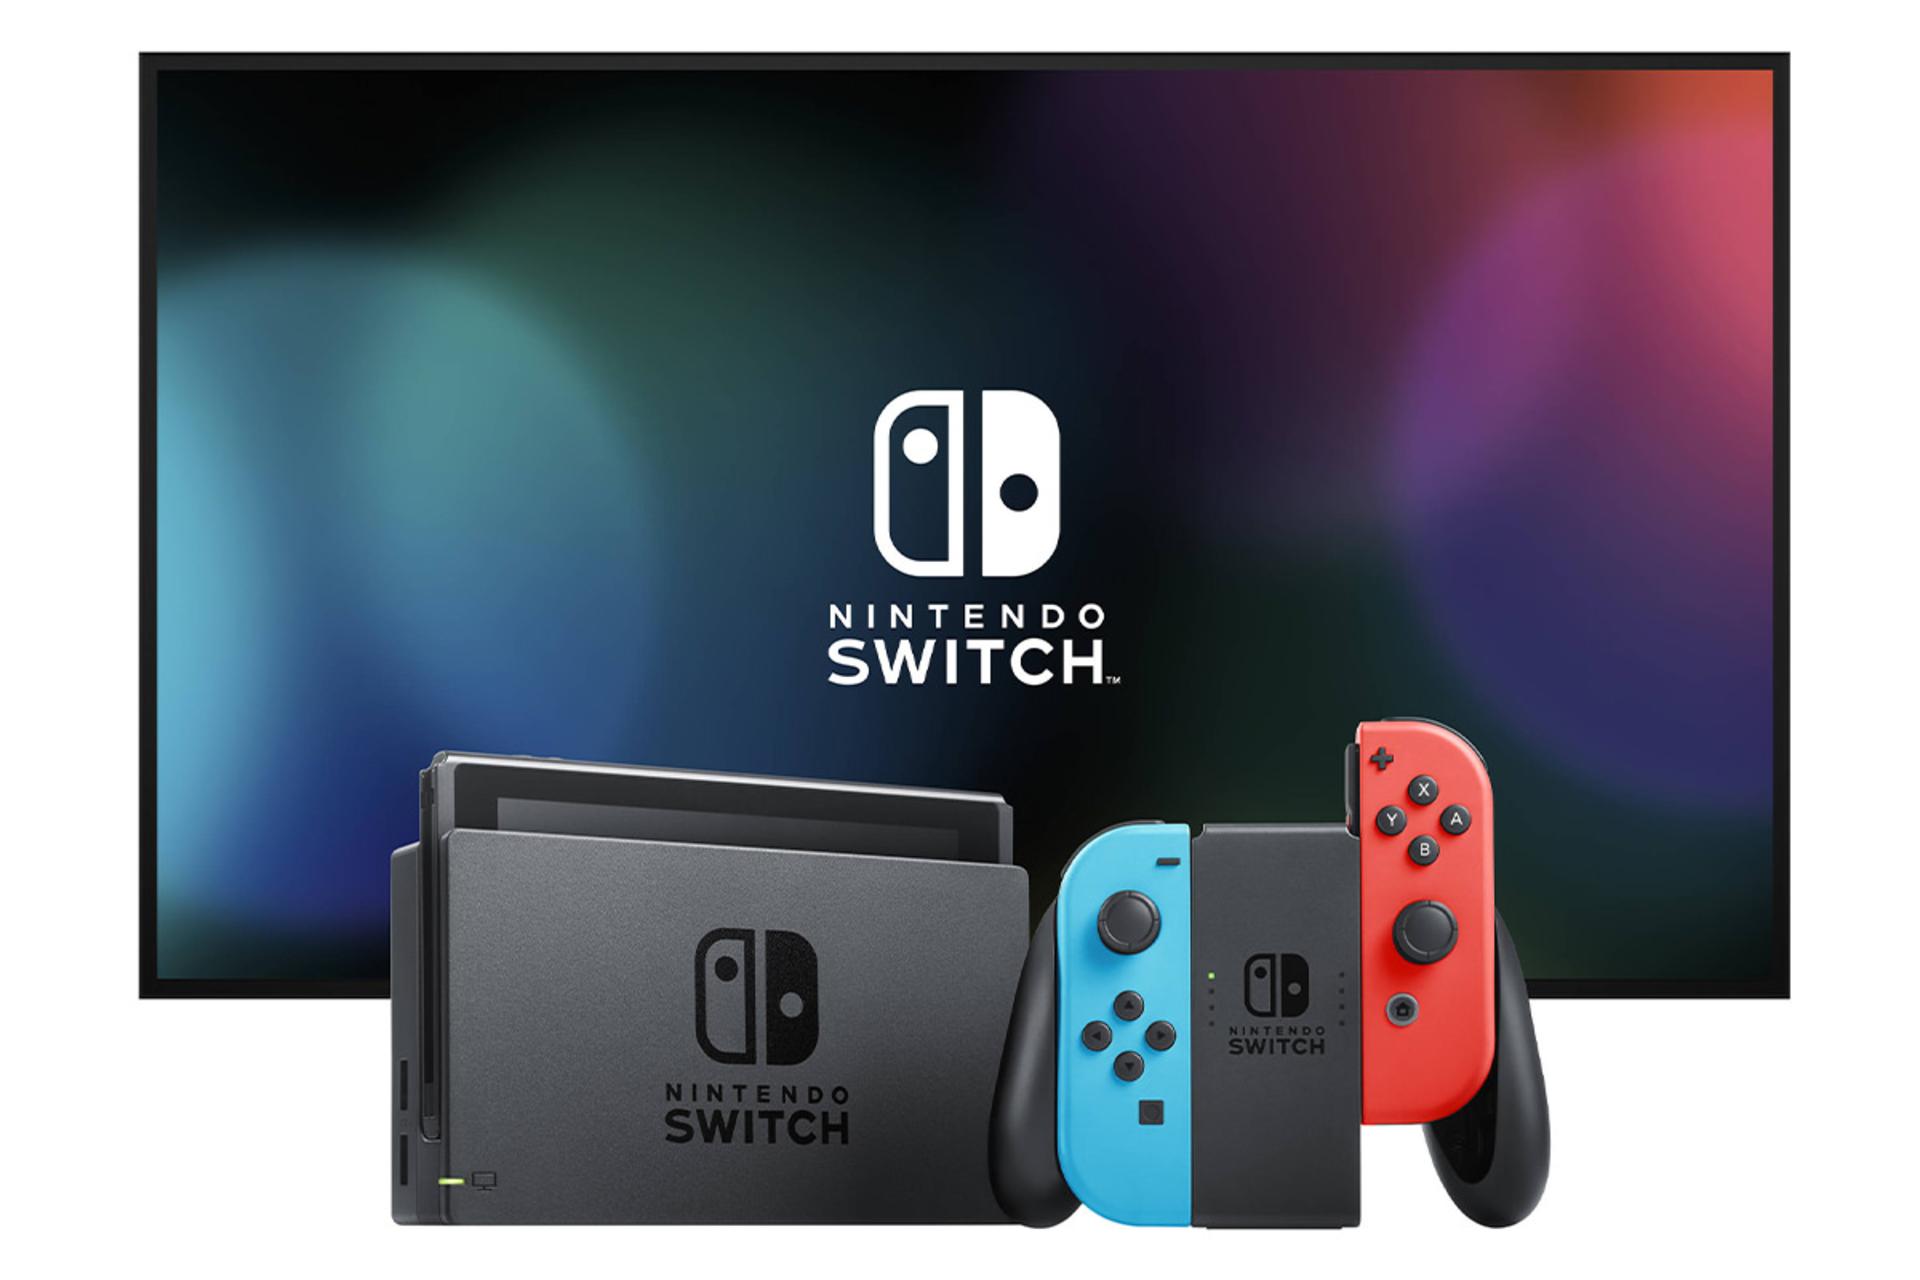 دسته نینتندو سوییچ با جویکان های آبی و قرمز به همراه با داک و خود کنسول / Nintendo Switch